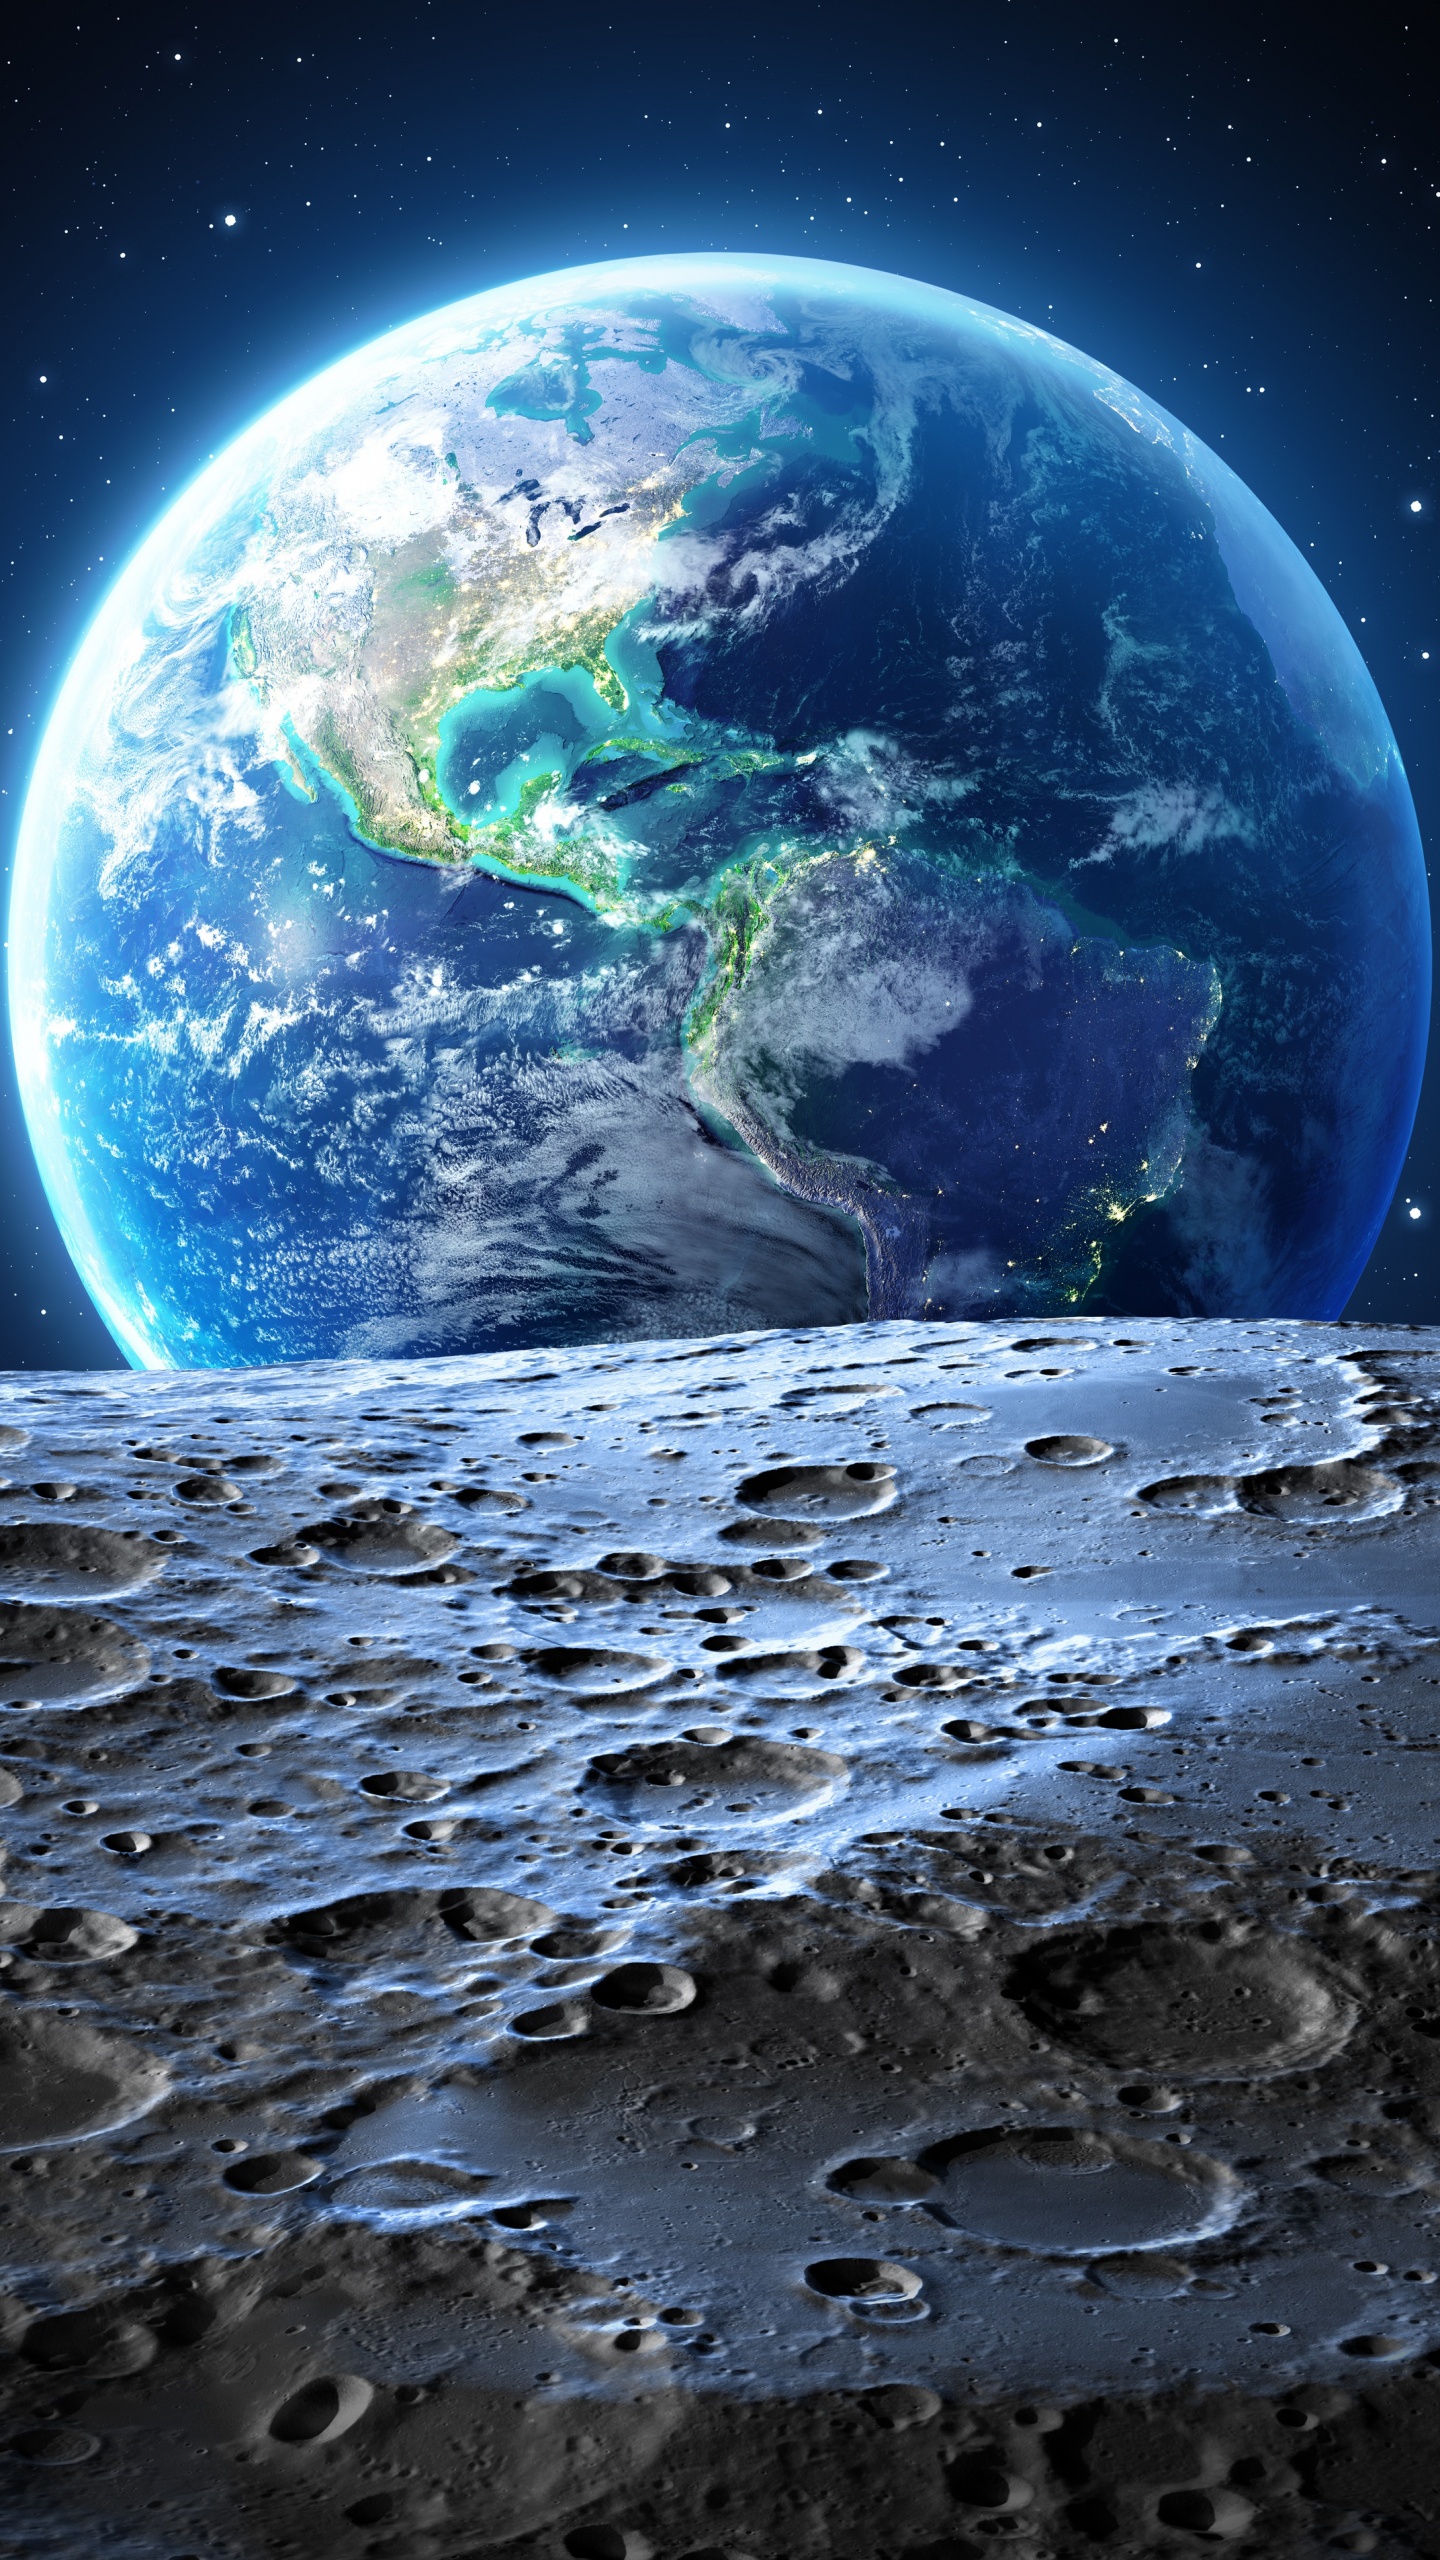 月亮, 美国, 这个星球, 外层空间, 天文学对象 壁纸 1440x2560 允许